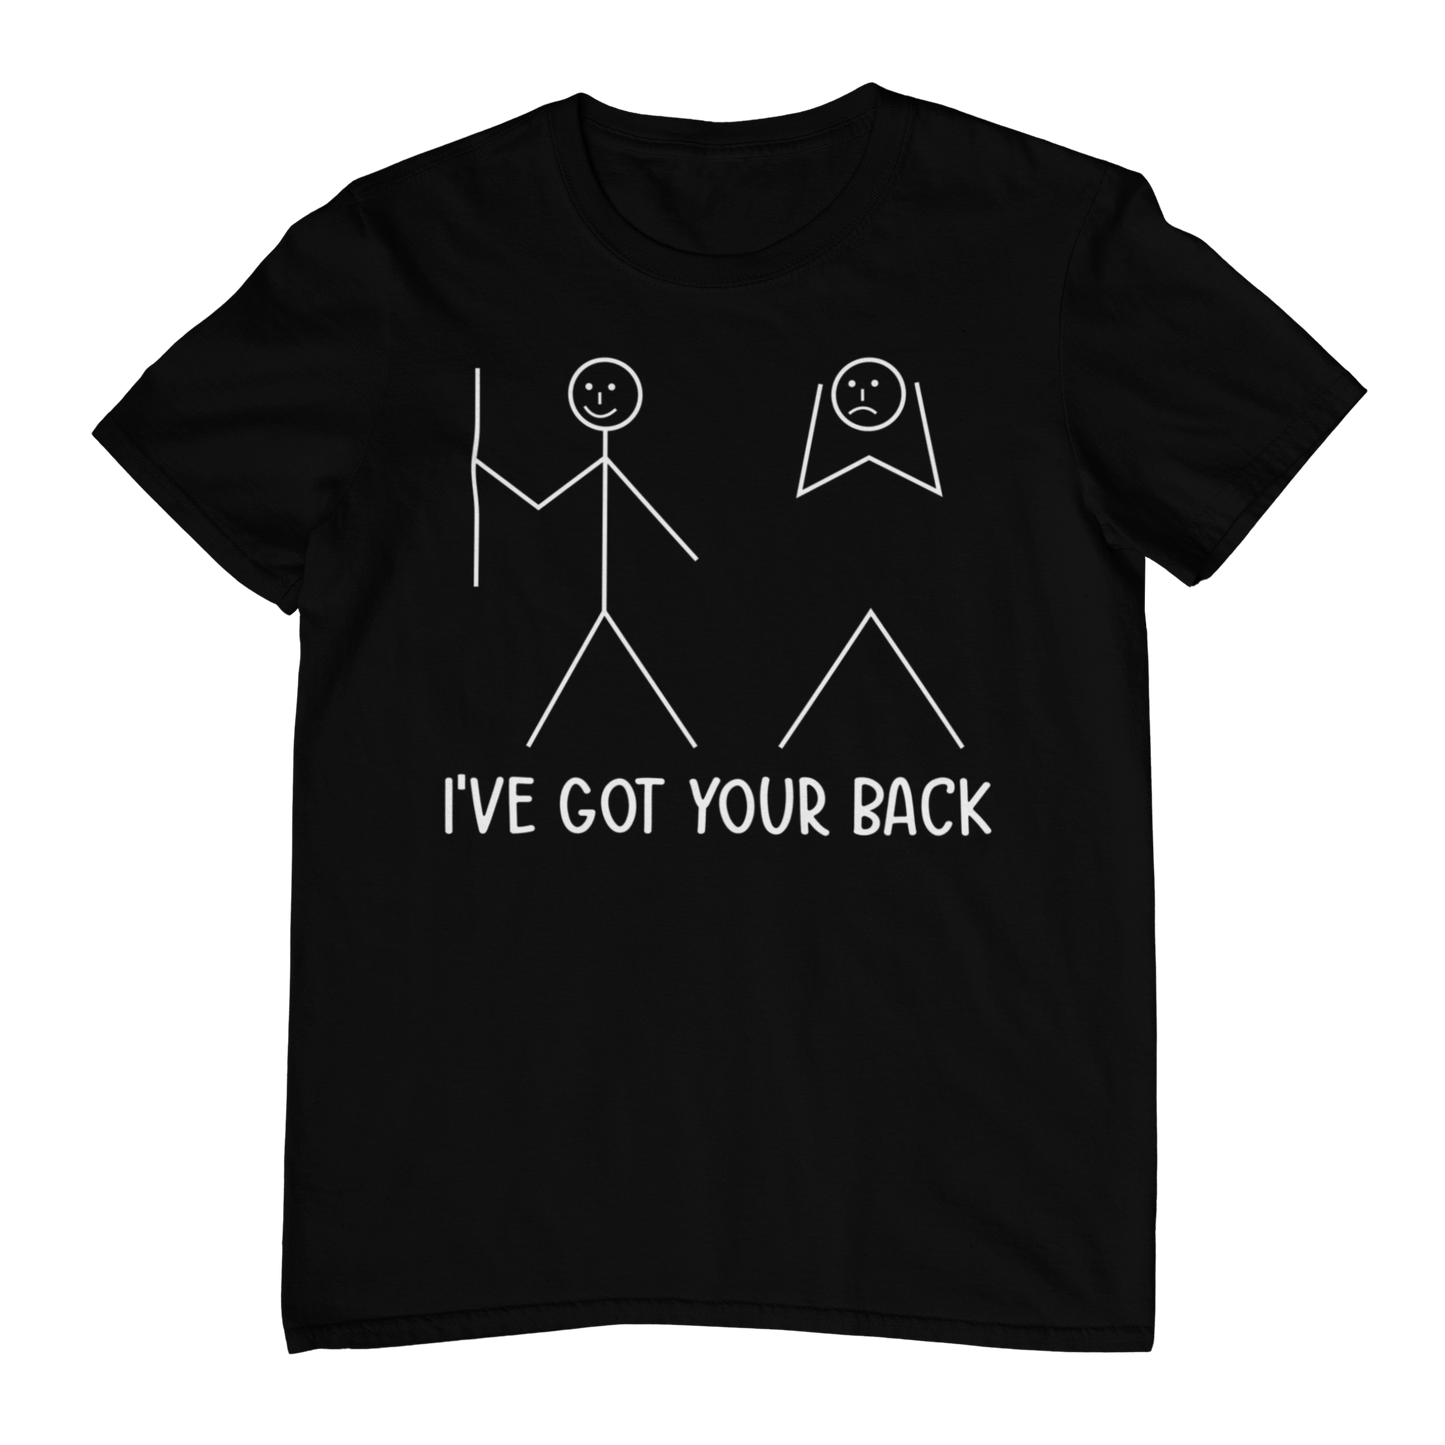 I’ve got your back T-shirt